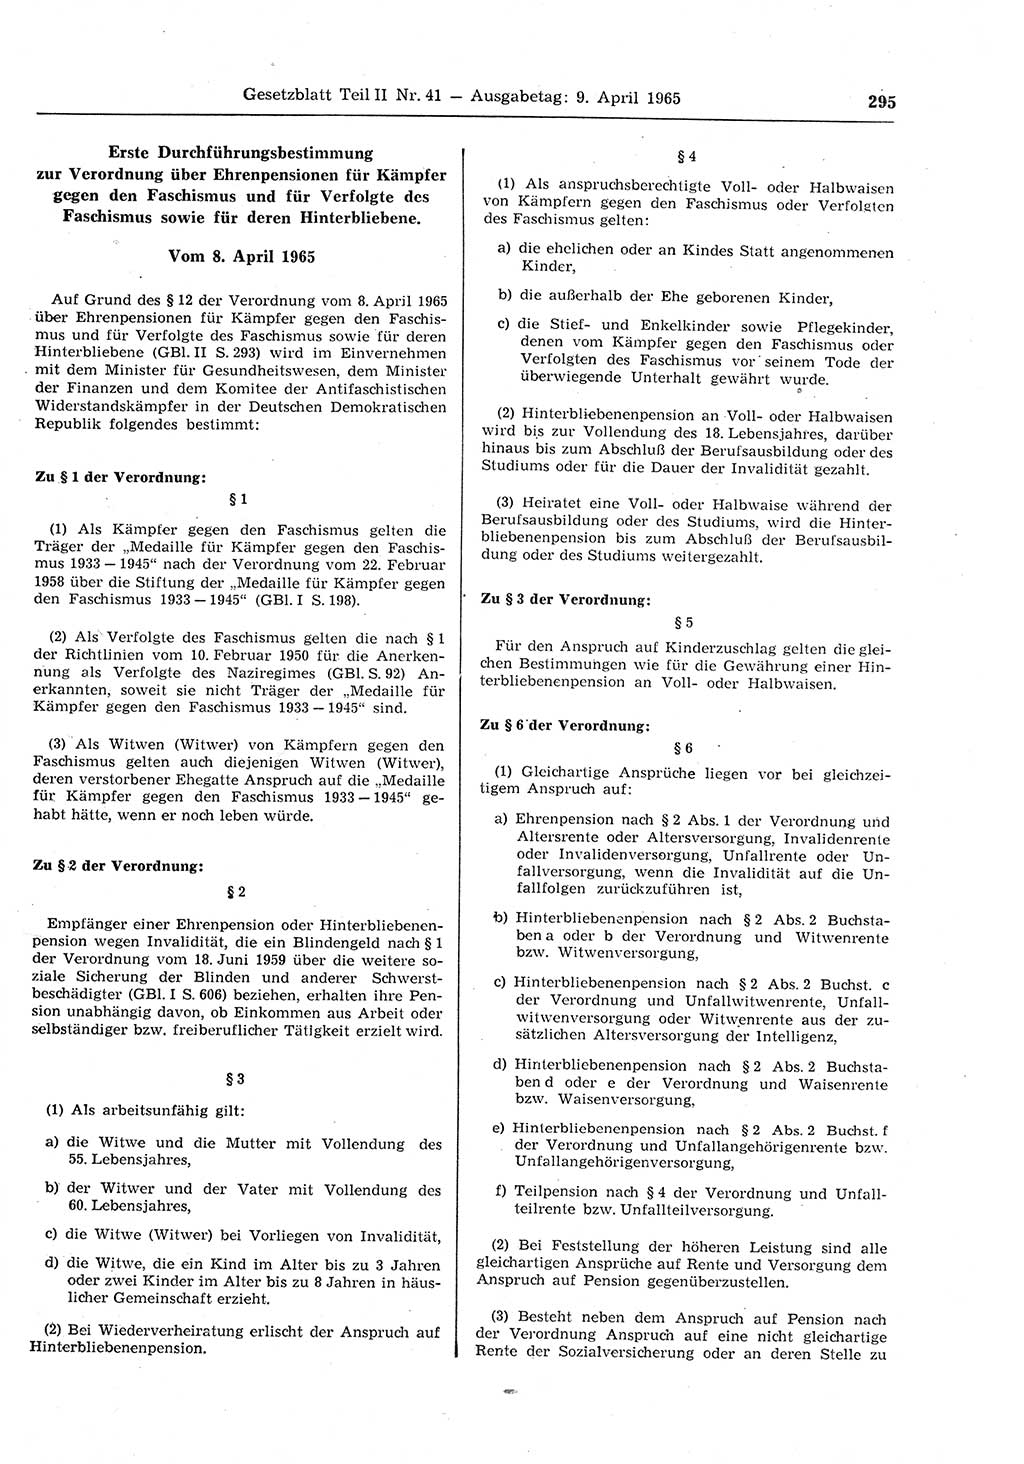 Gesetzblatt (GBl.) der Deutschen Demokratischen Republik (DDR) Teil ⅠⅠ 1965, Seite 295 (GBl. DDR ⅠⅠ 1965, S. 295)